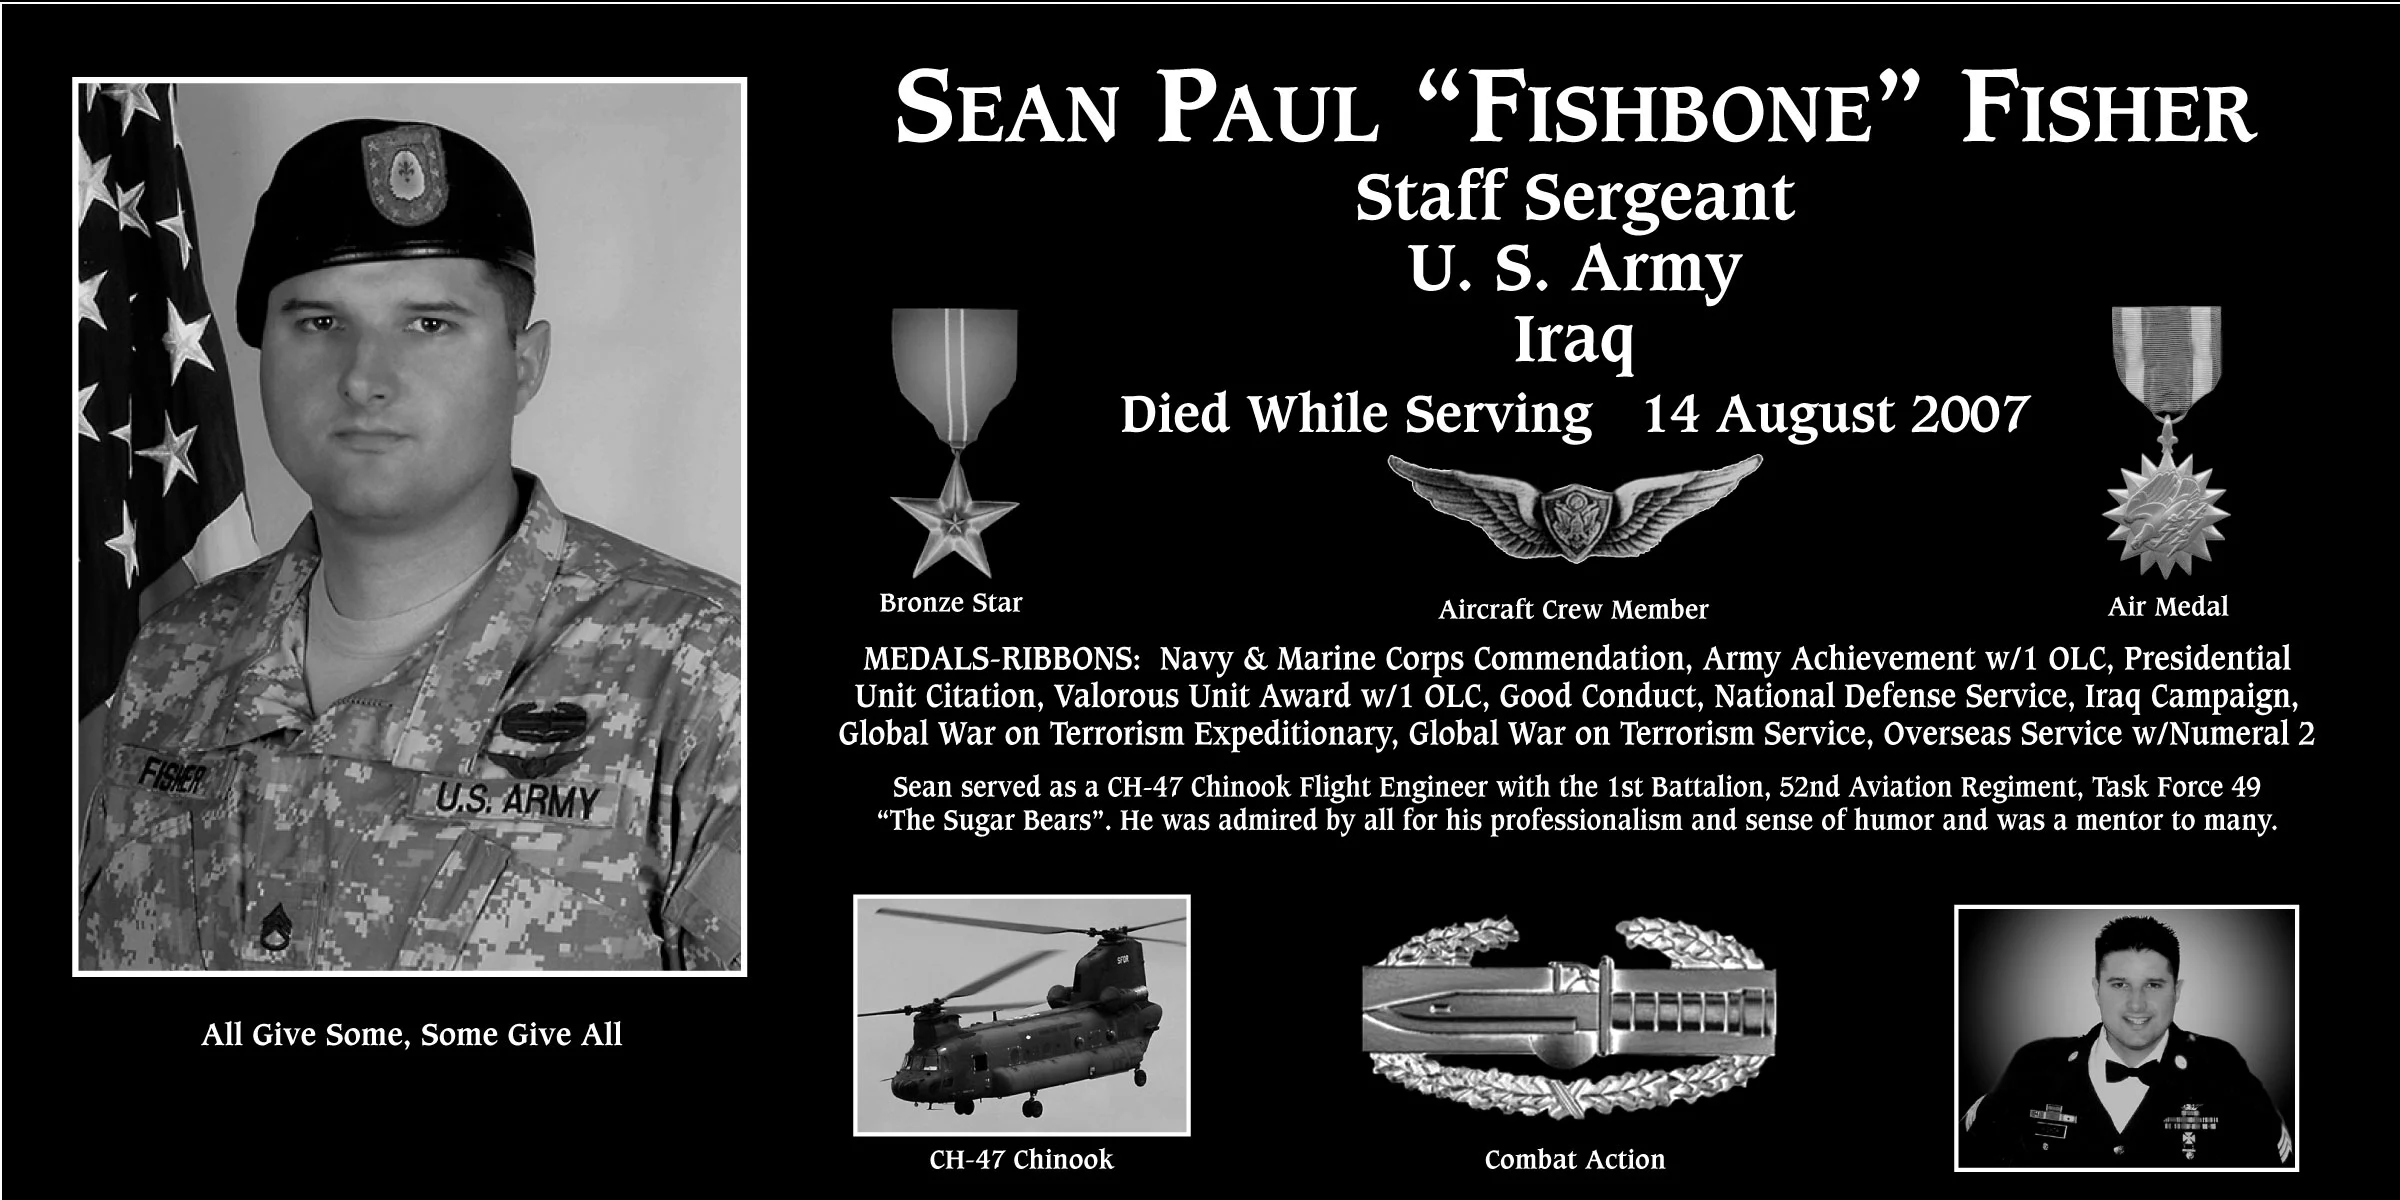 Sean Paul “Fishbone” Fisher